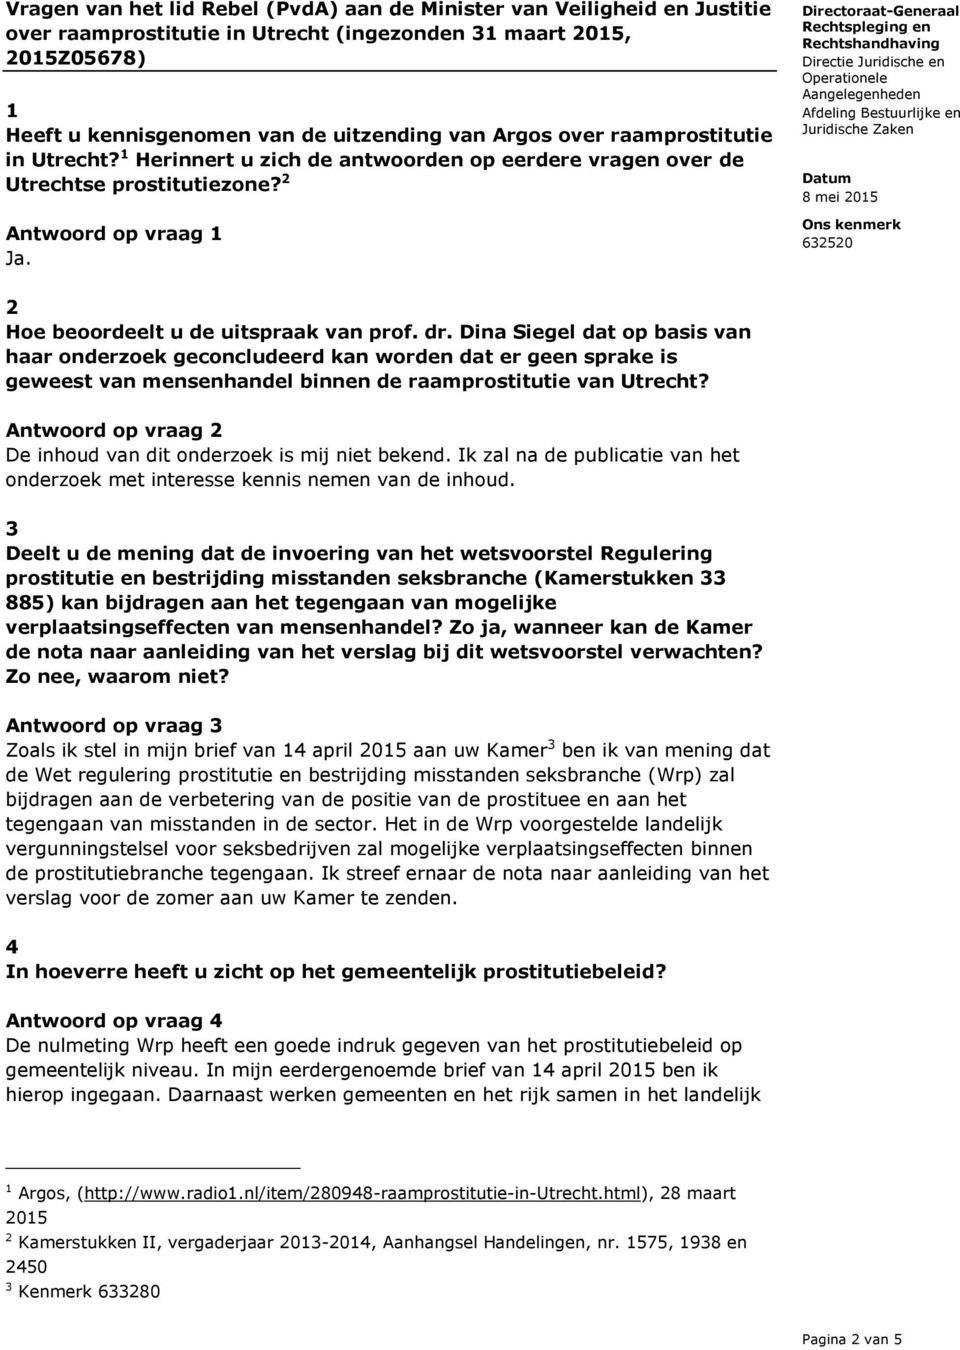 Dina Siegel dat op basis van haar onderzoek geconcludeerd kan worden dat er geen sprake is geweest van mensenhandel binnen de raamprostitutie van Utrecht?